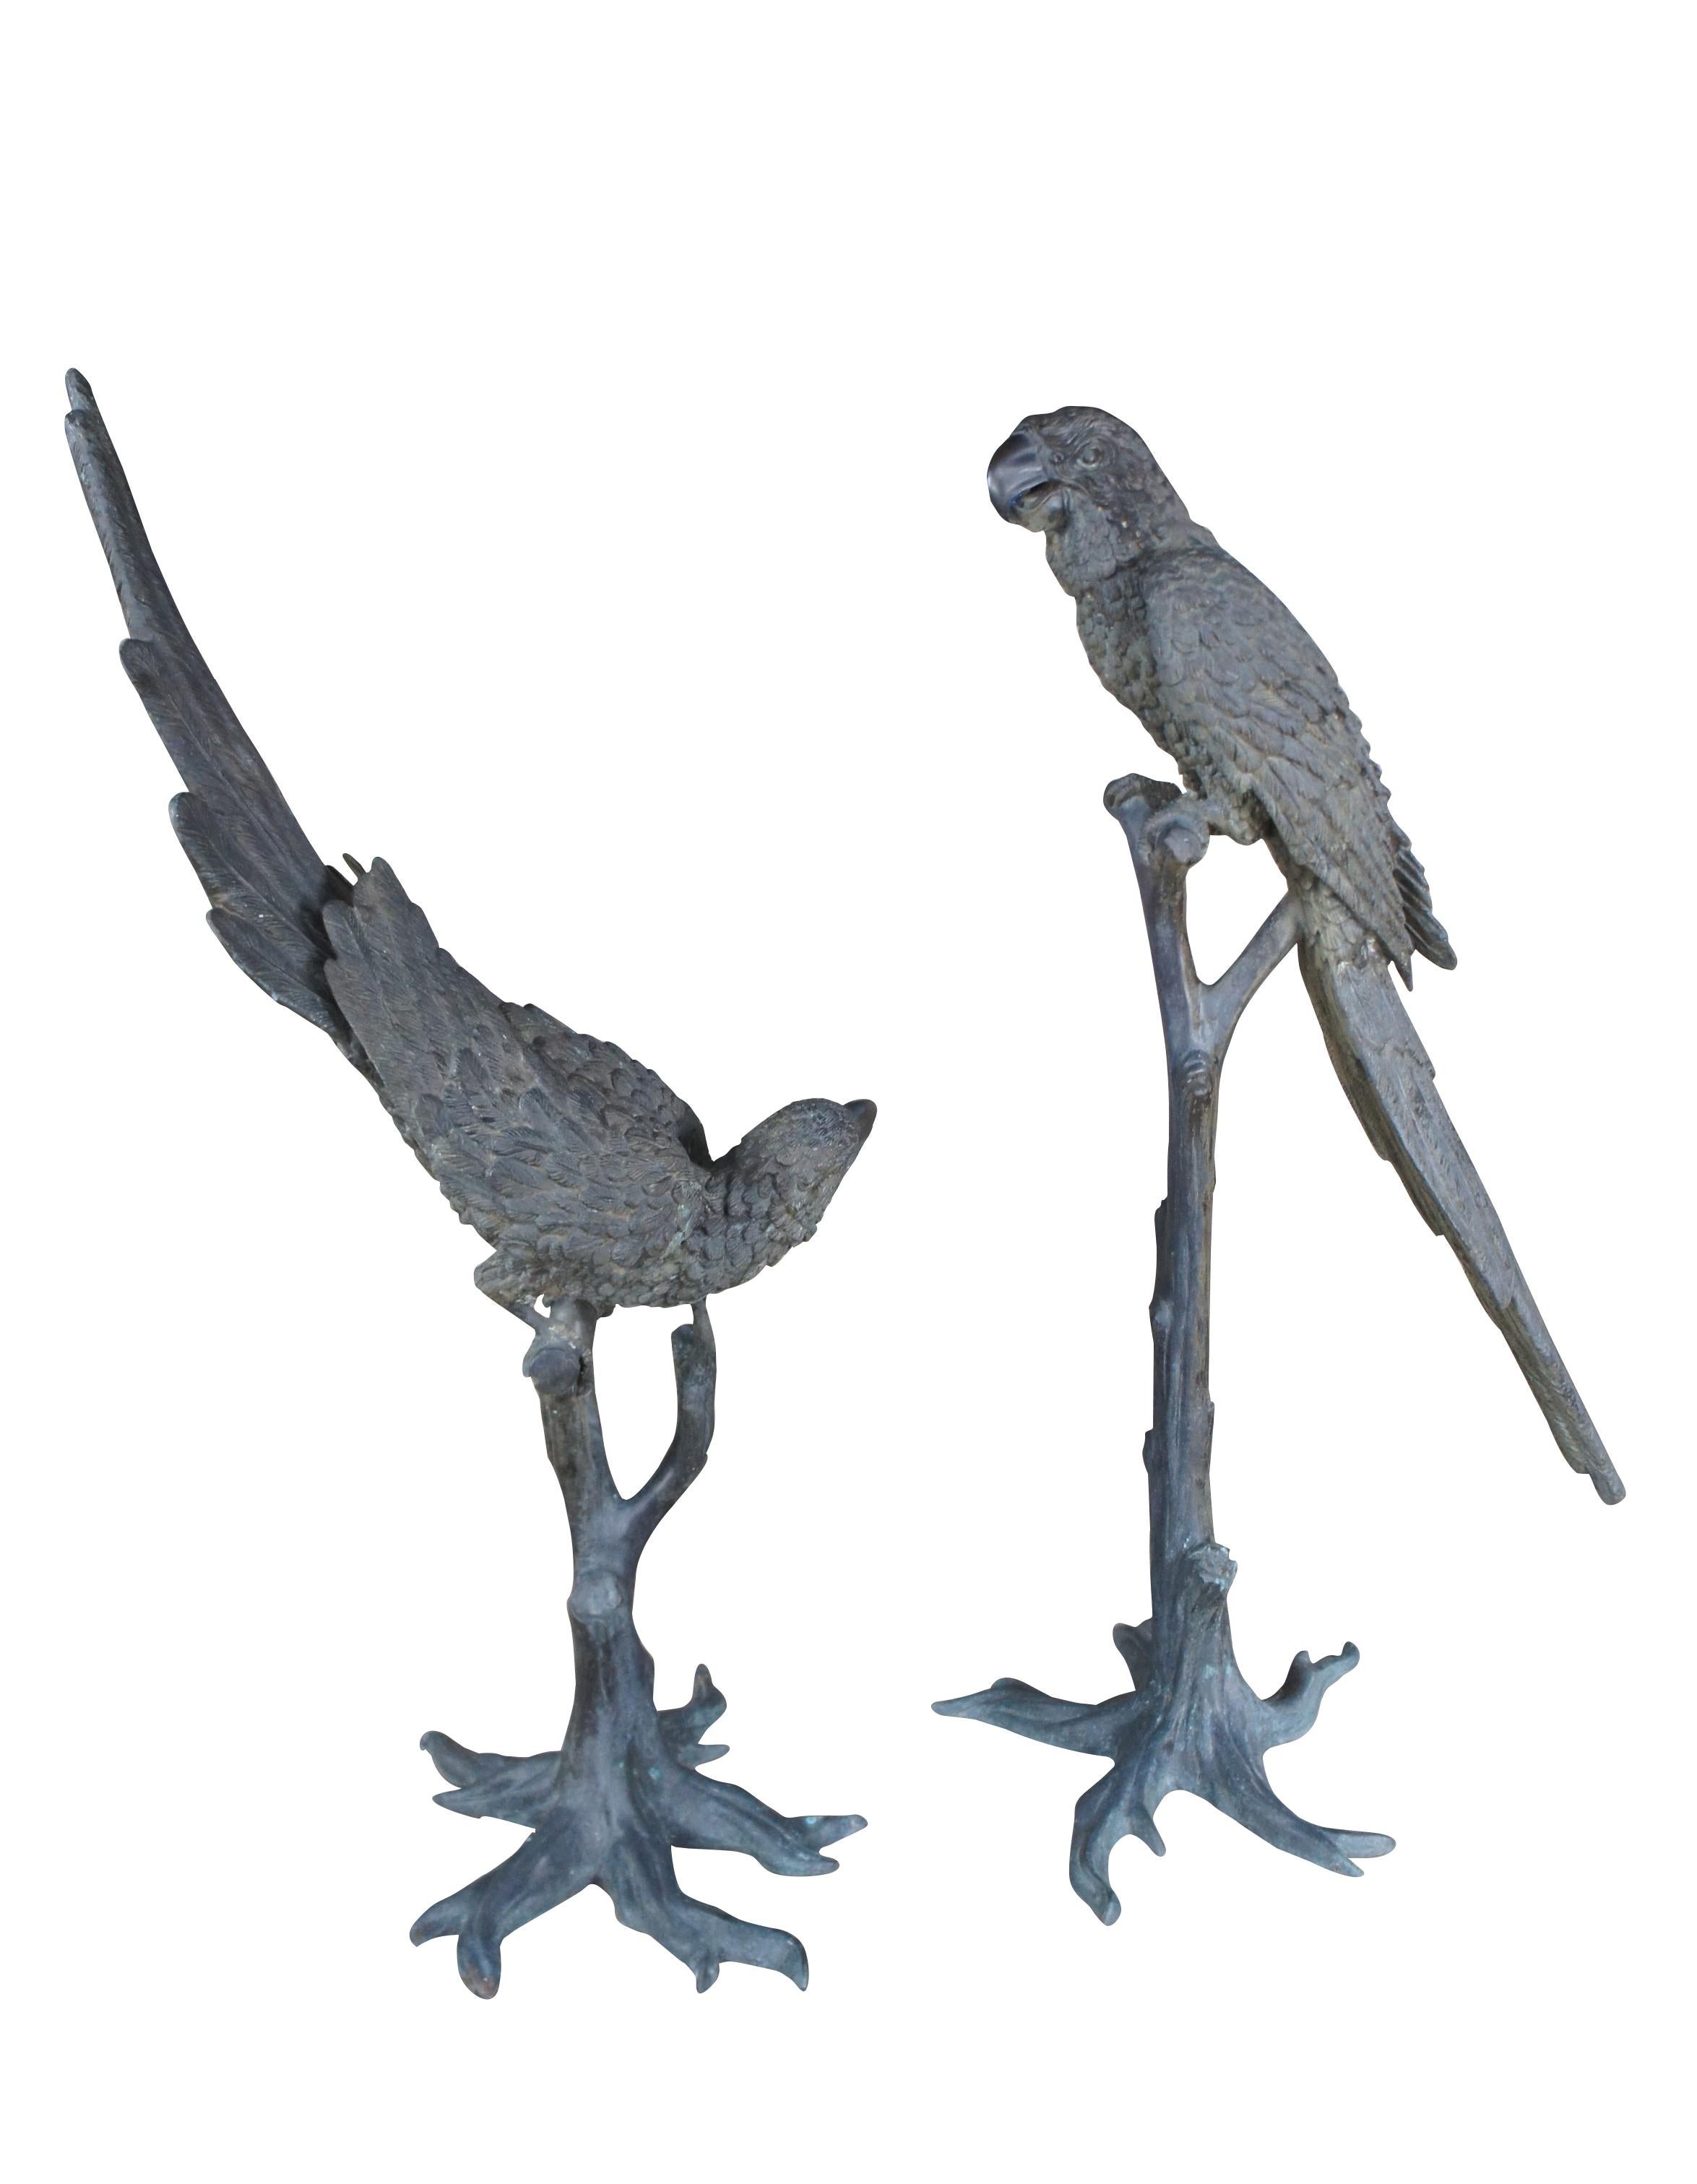 Antique French Art Deco Pair Lifesize Bronze Parrot Bird Sculptures Statues 55